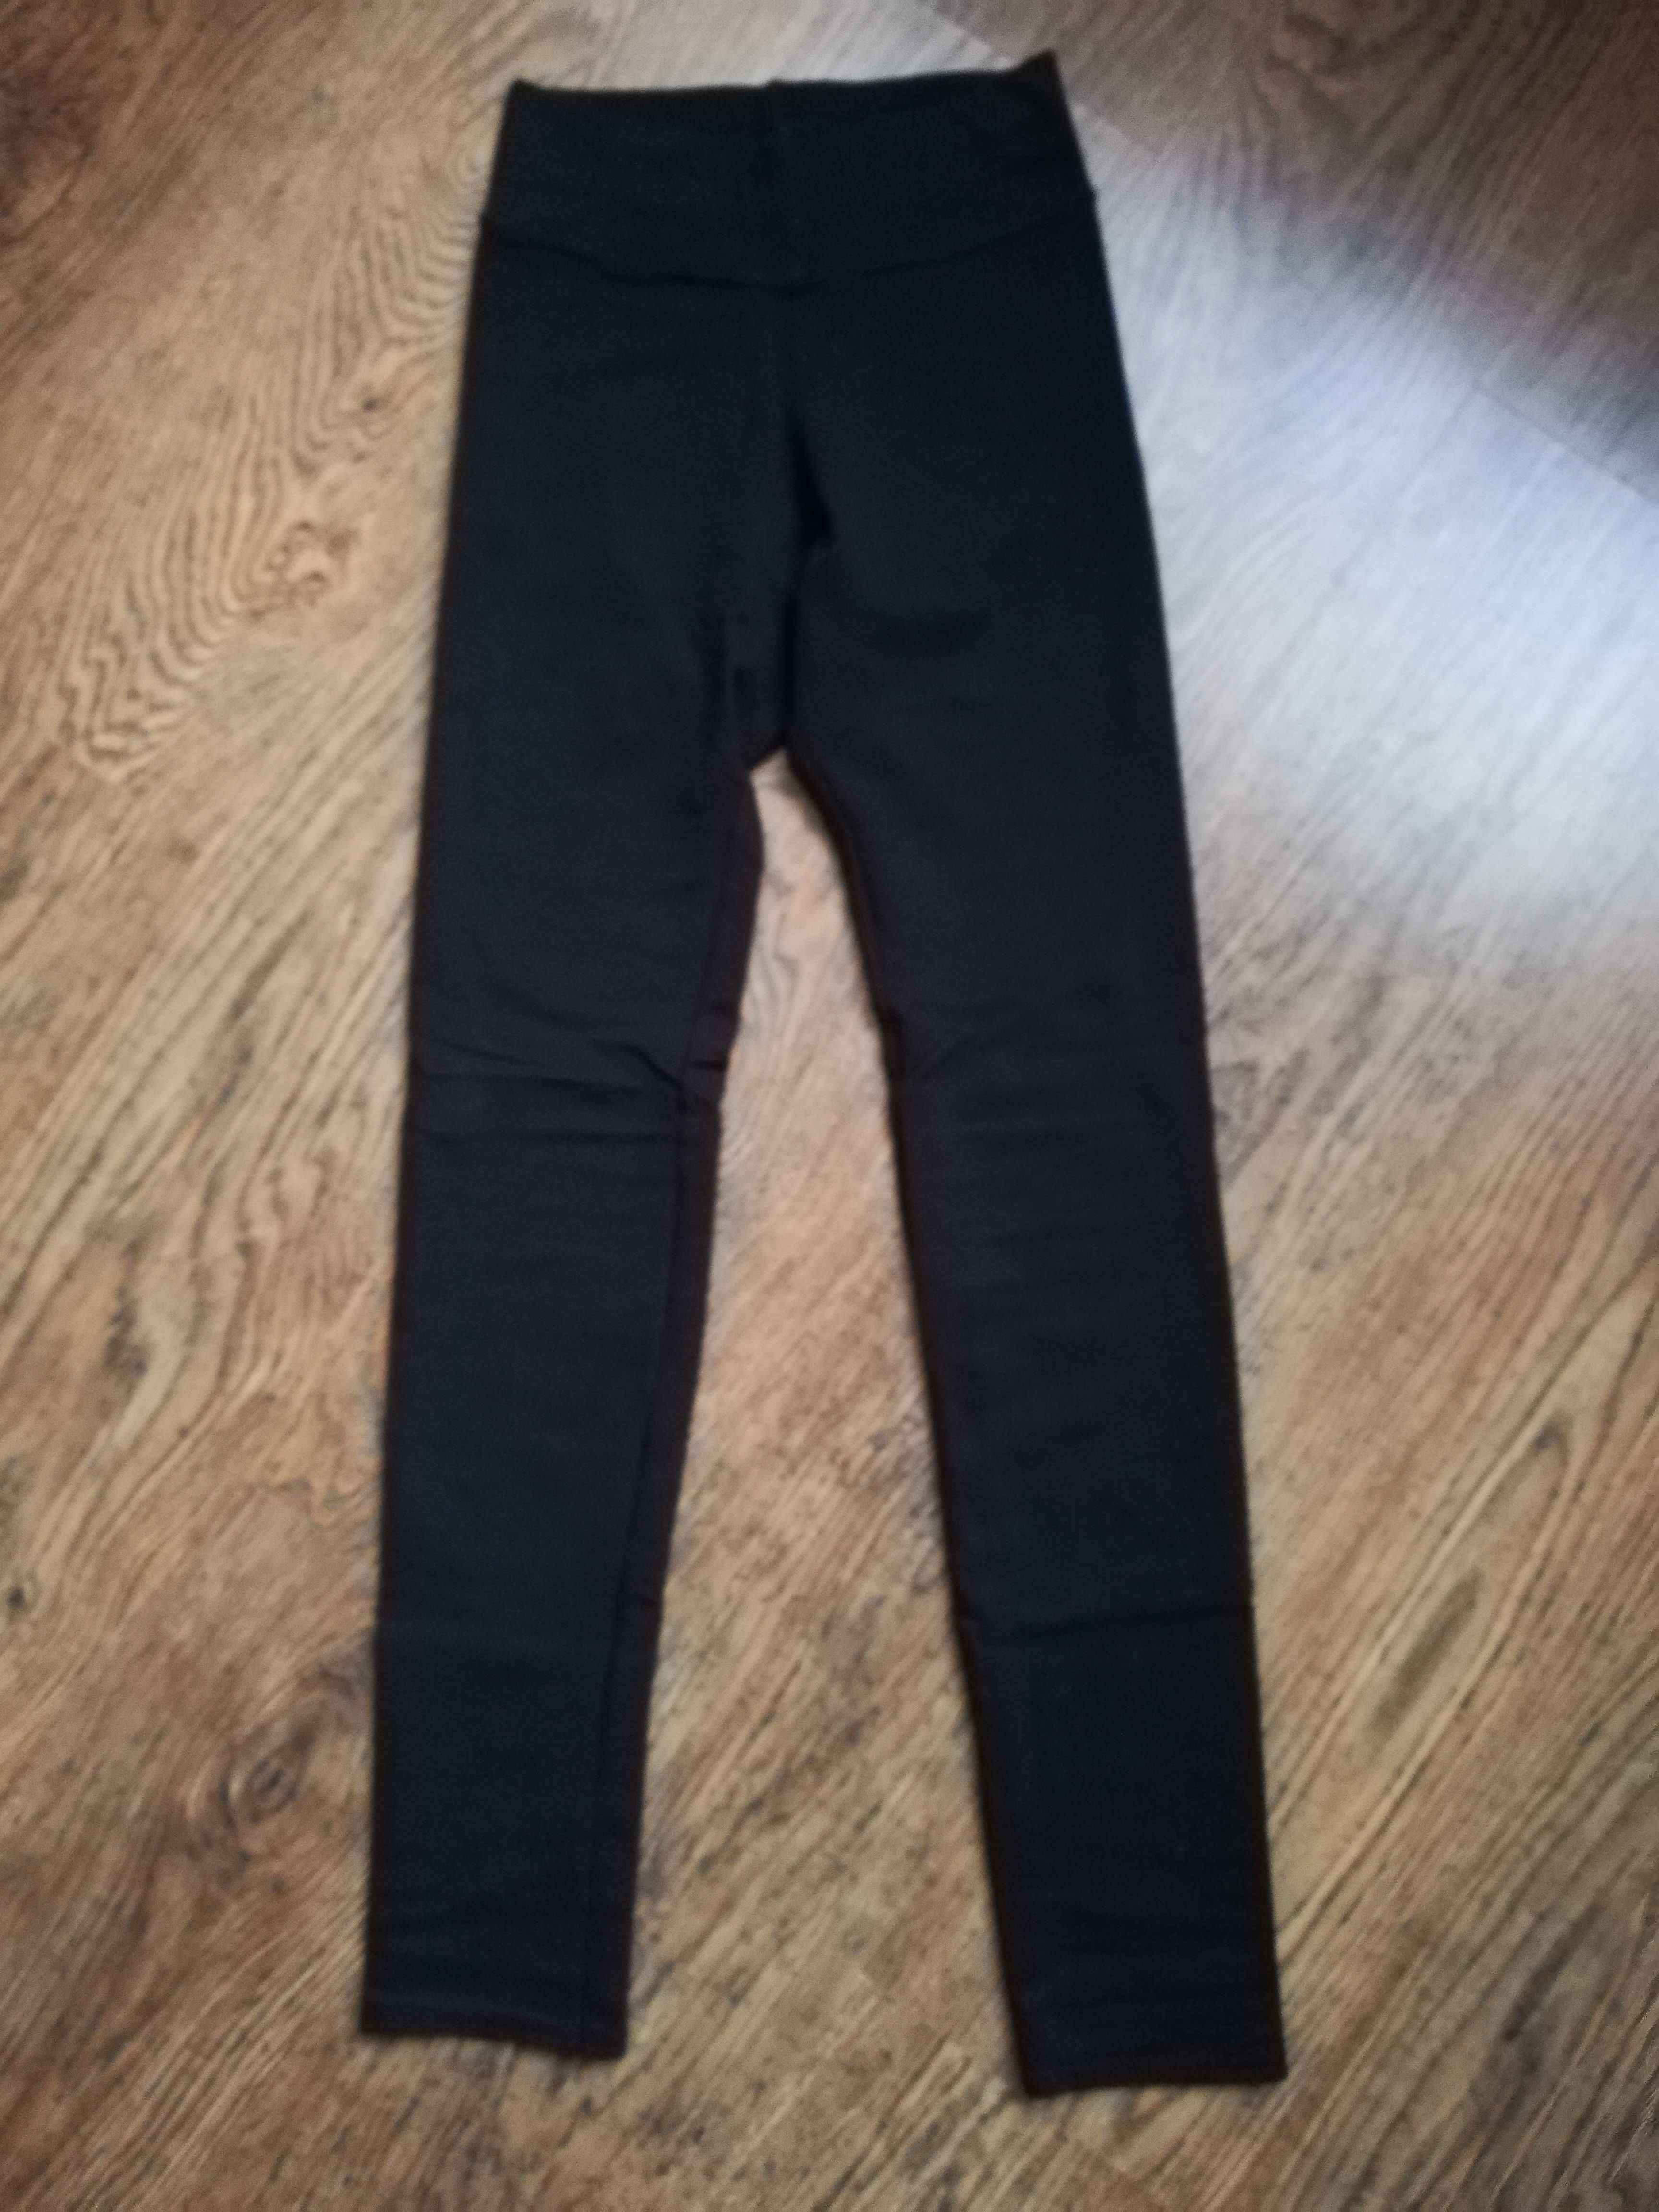 Spodnie czarne getry legginsy rozmiar M